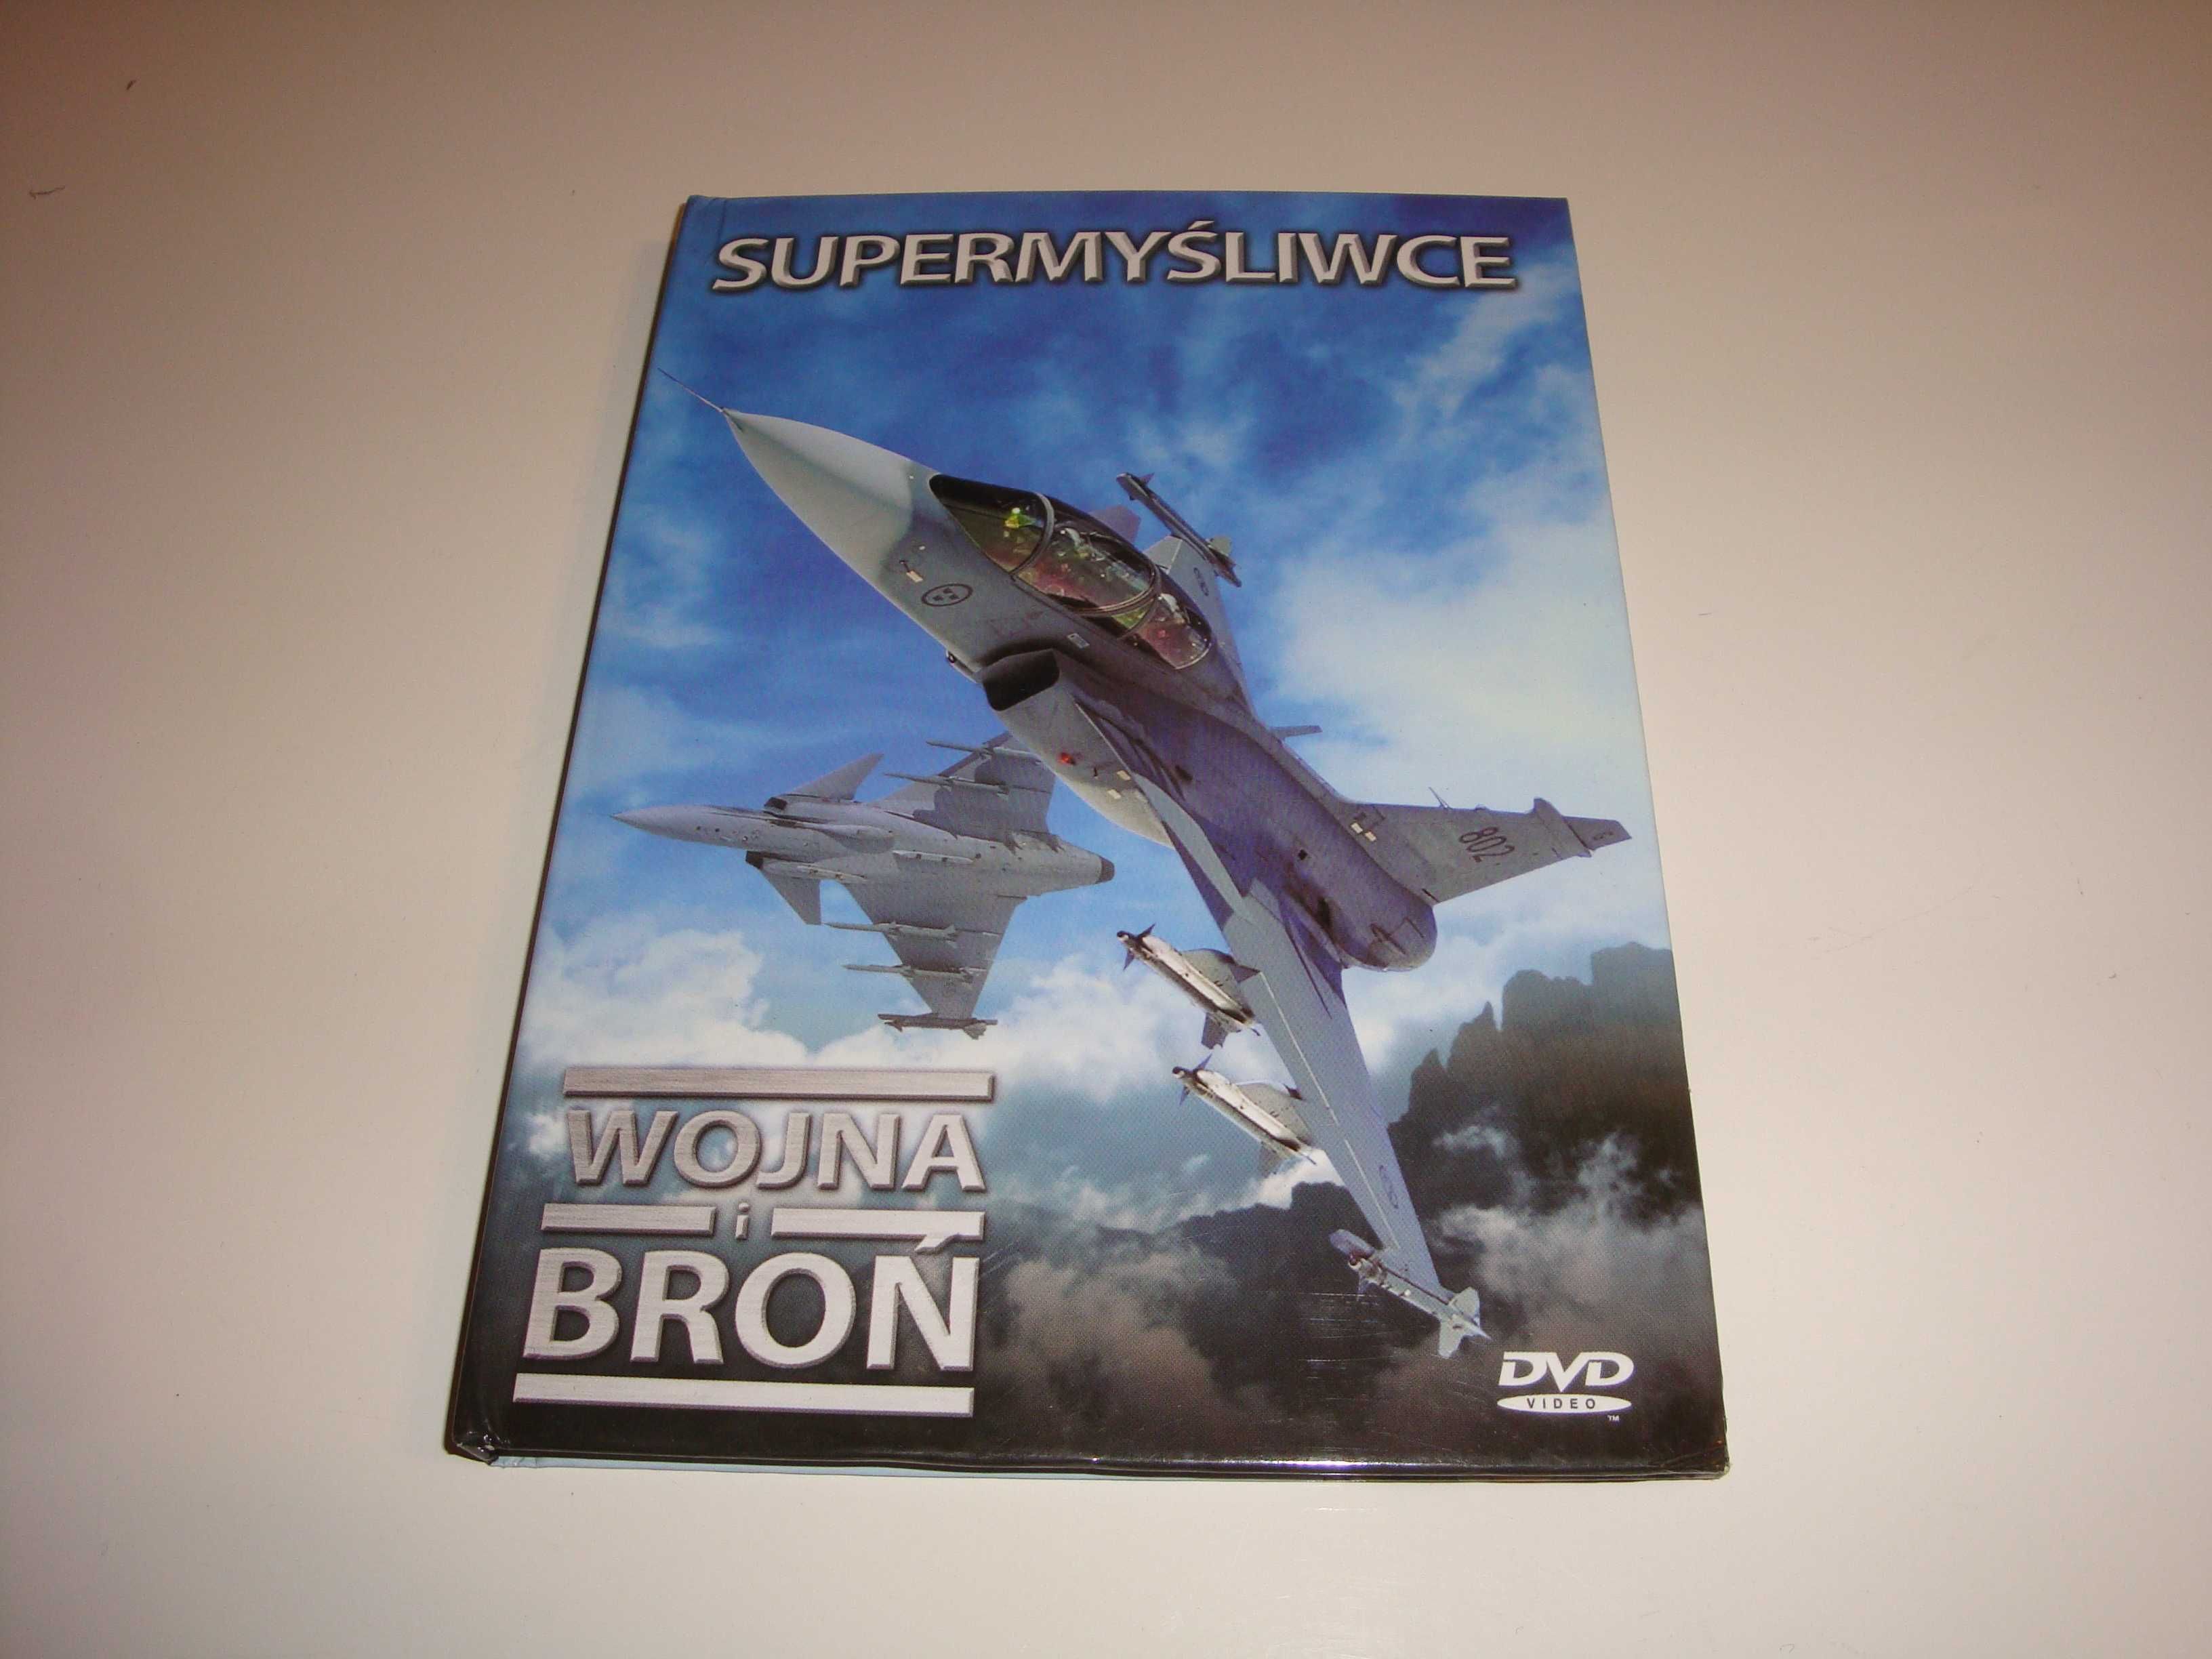 Super myśliwce  Wojna i broń  DVD